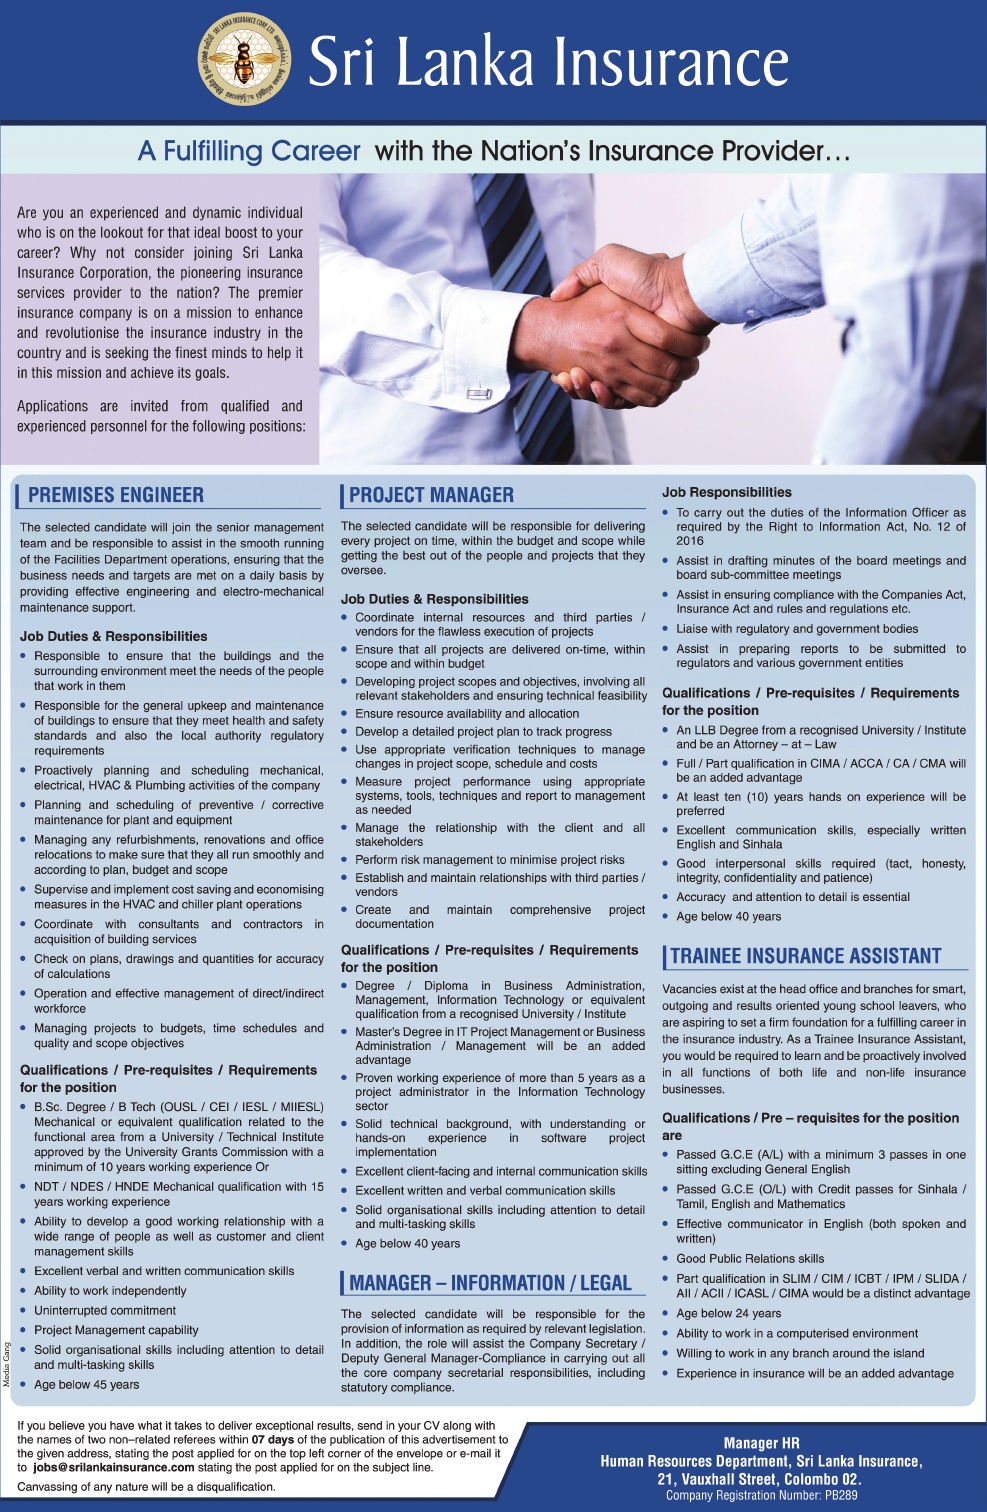 Premises Engineer / Trainee Insurance Assistant - Sri Lanka Insurance